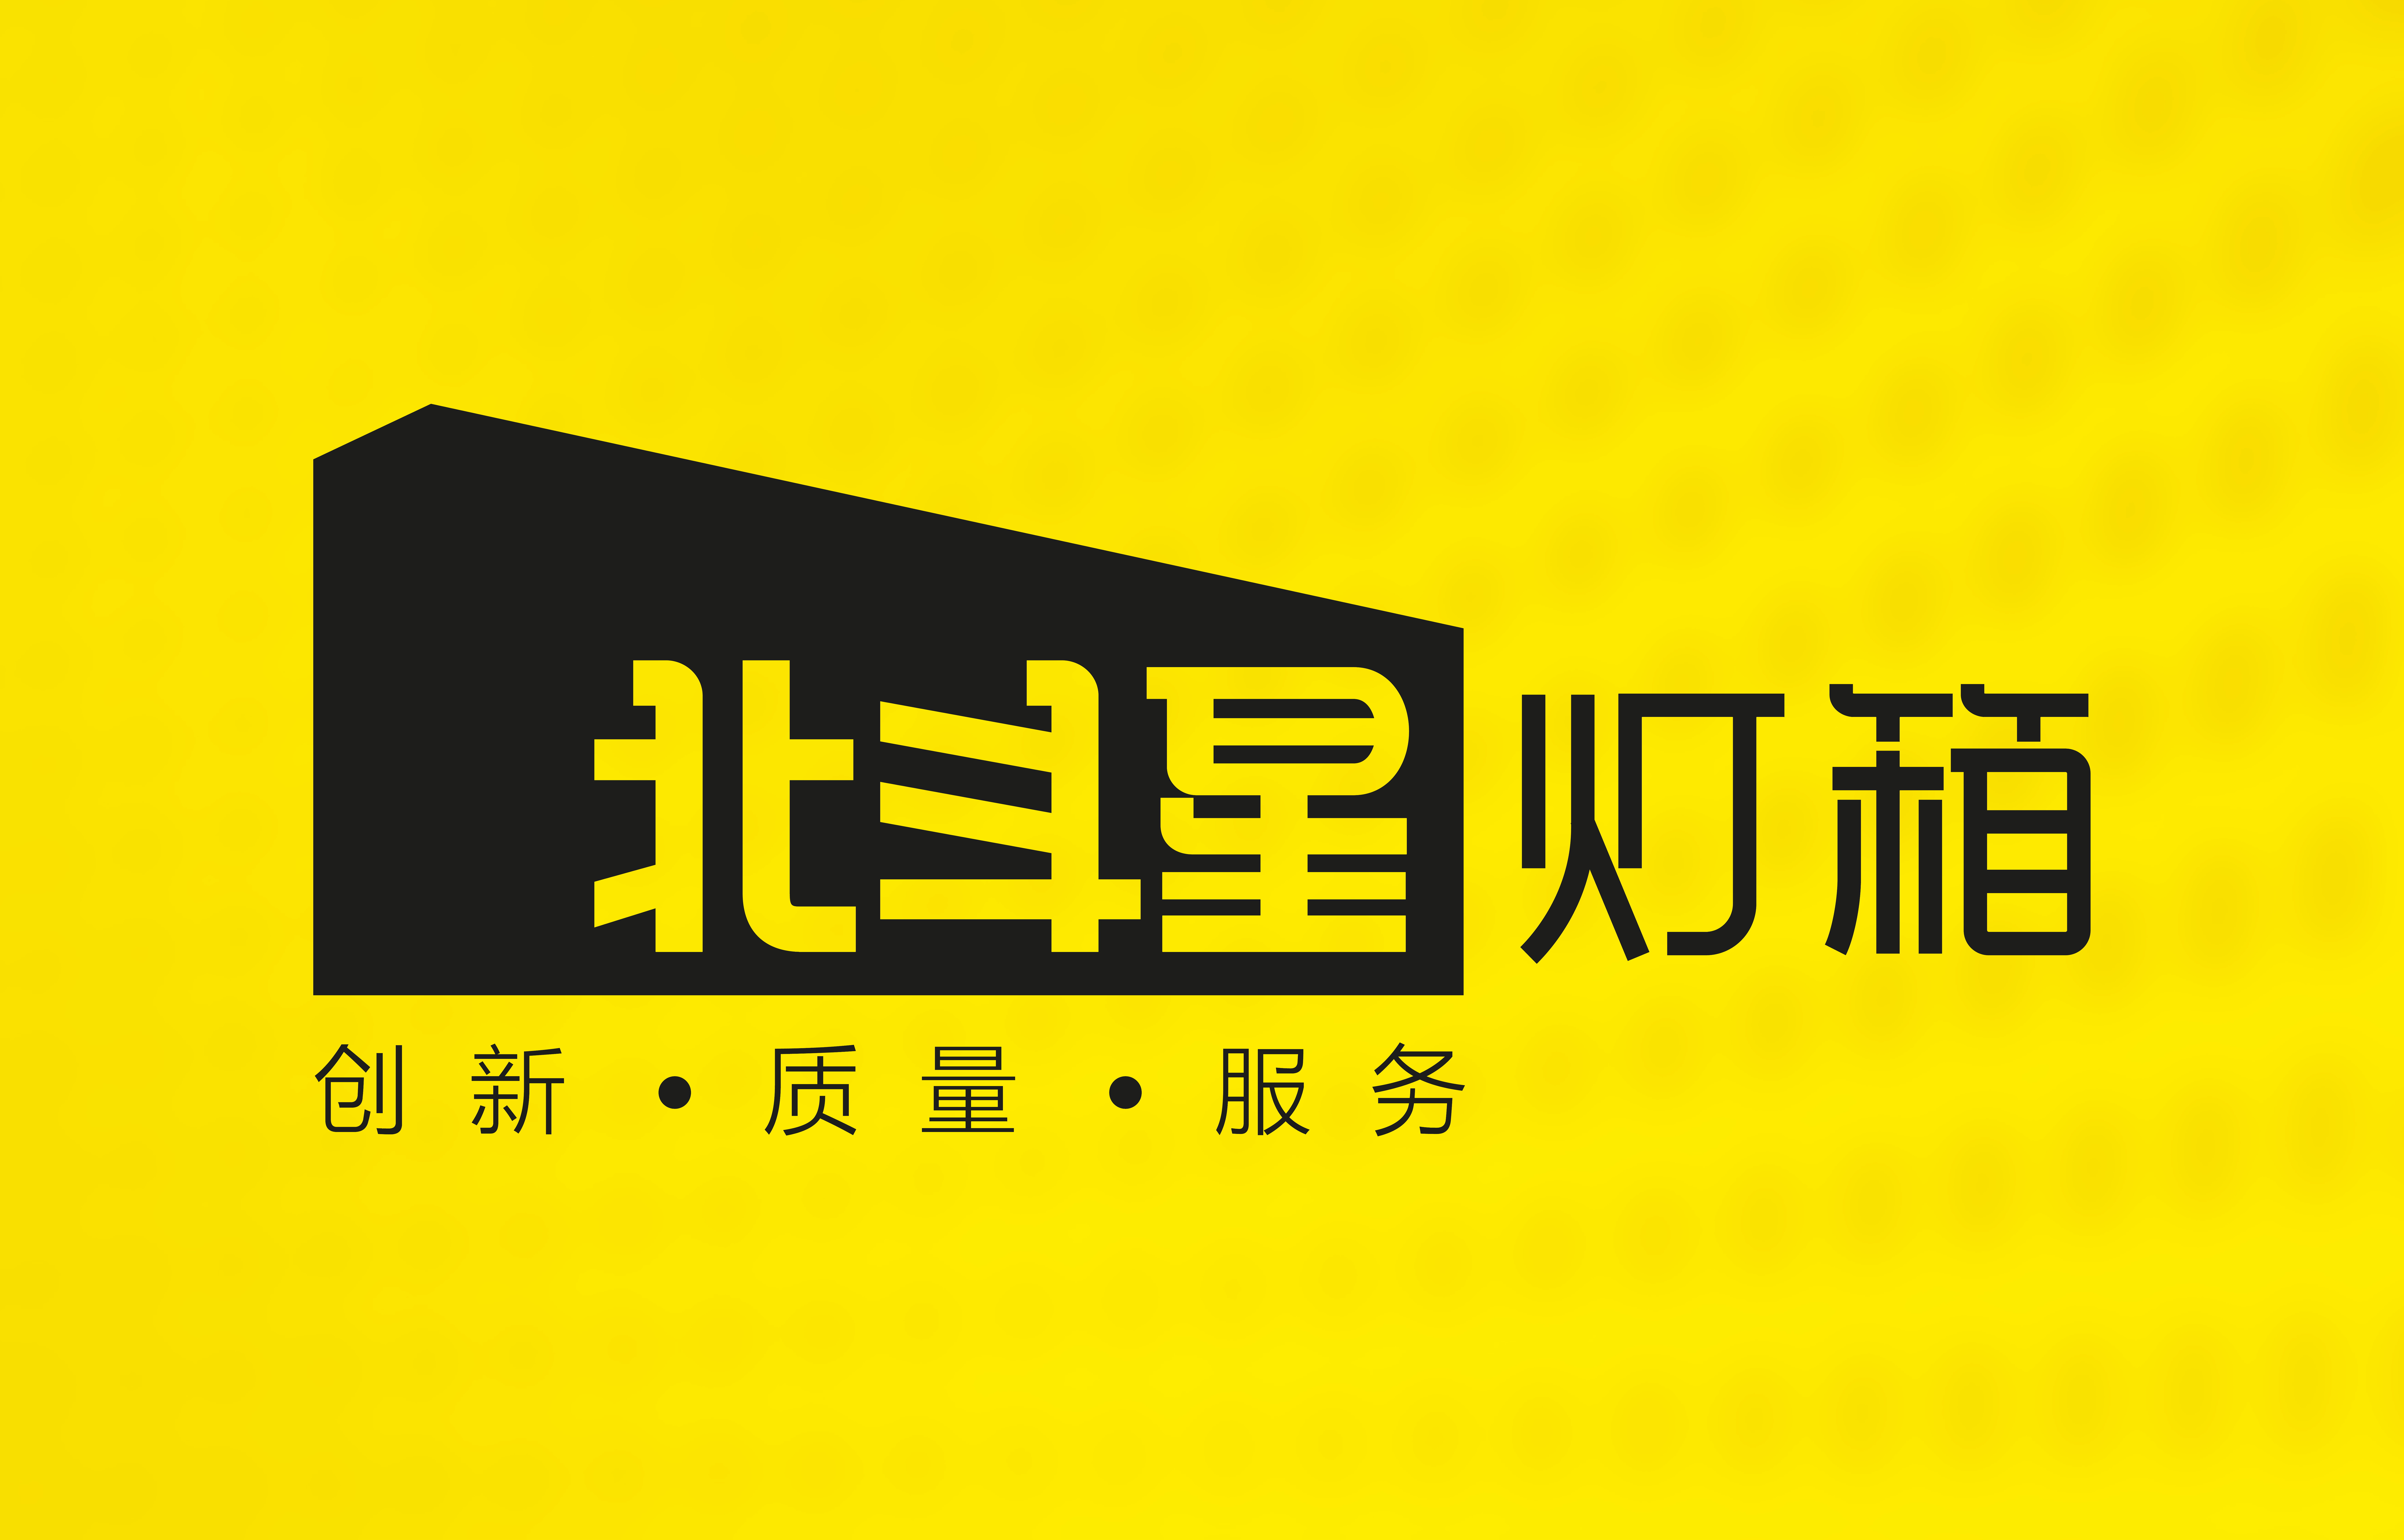 广州北技星电子设备有限公司